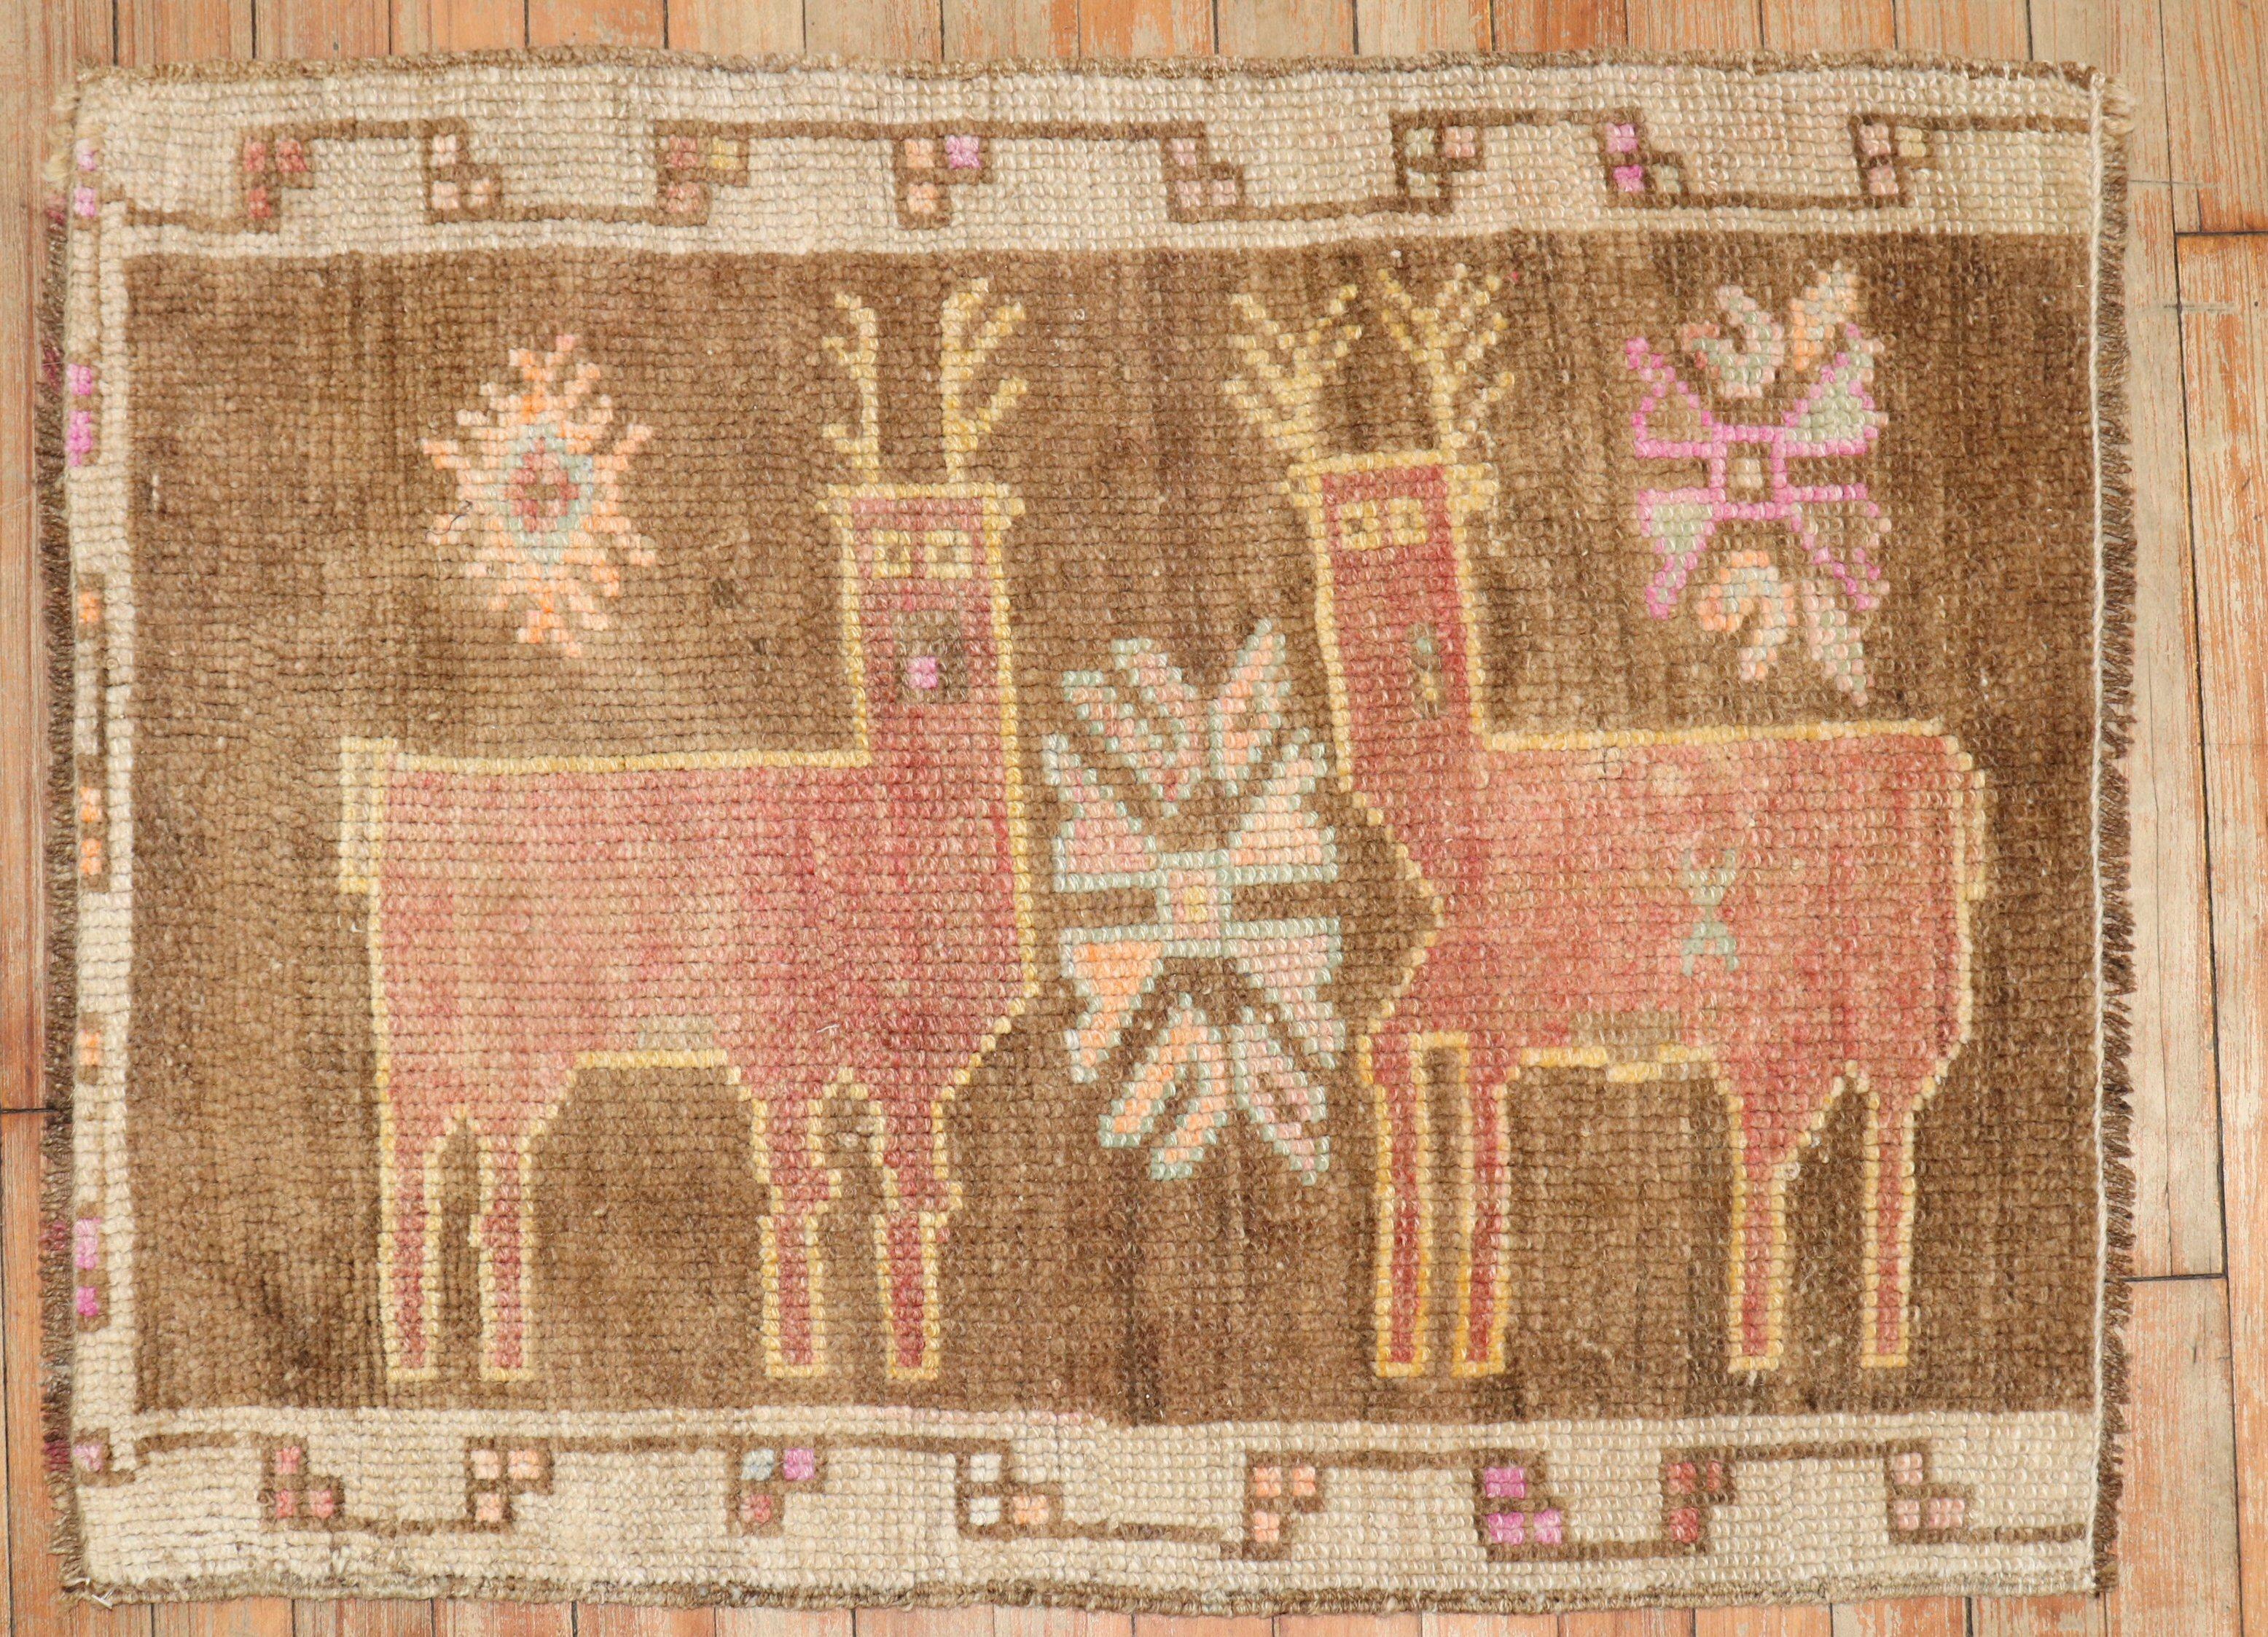 Türkischer Teppich aus der Mitte des 20. Jahrhunderts, der 2 Hirsche auf einem braunen Feld darstellt

Maße: 2'1